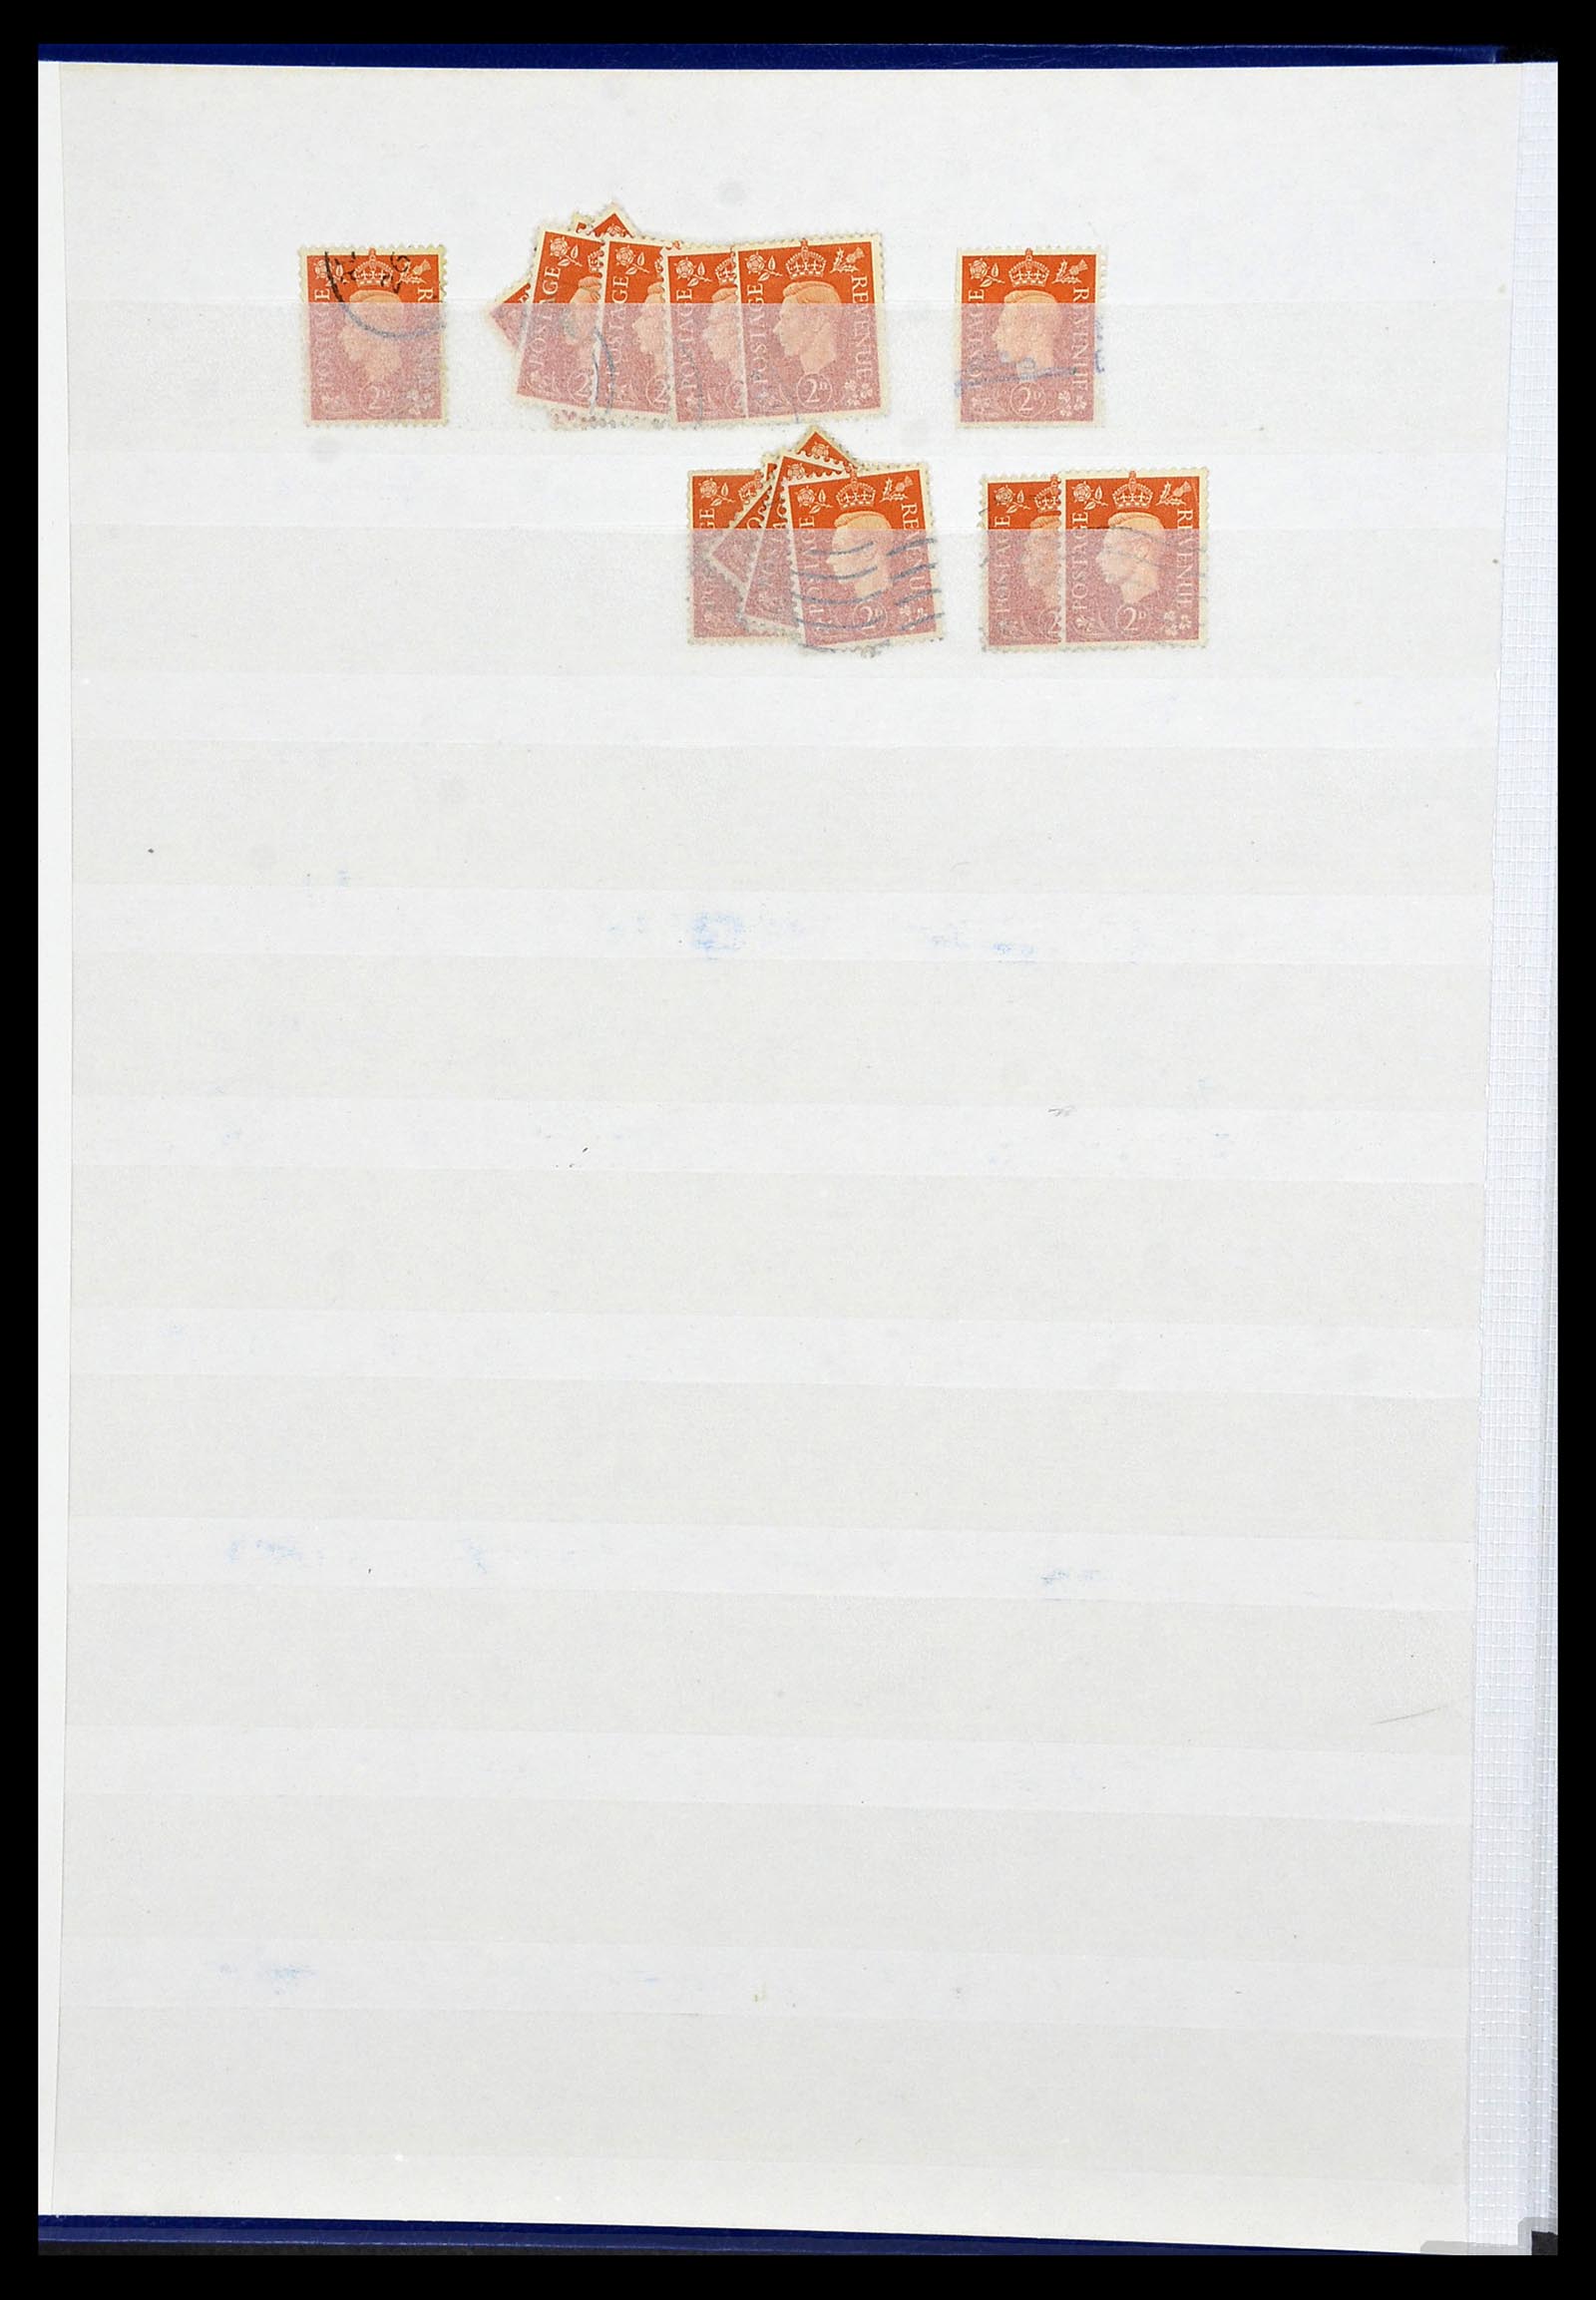 34368 032 - Postzegelverzameling 34368 Engeland uitzoekpartij 1858-1990.